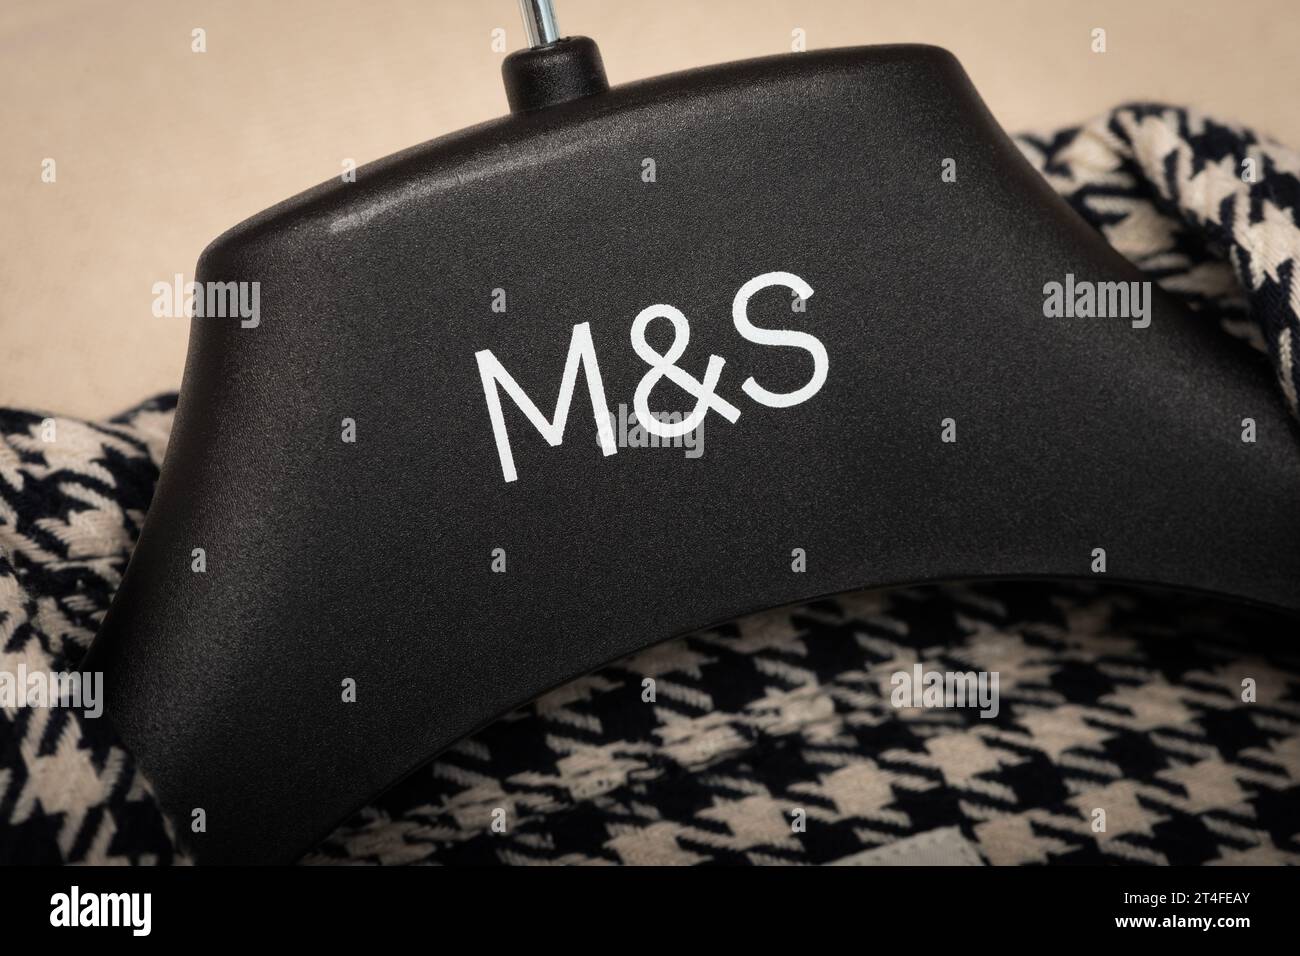 A close-up of the M&S logo as seen on a coat hanger. Stock Photo